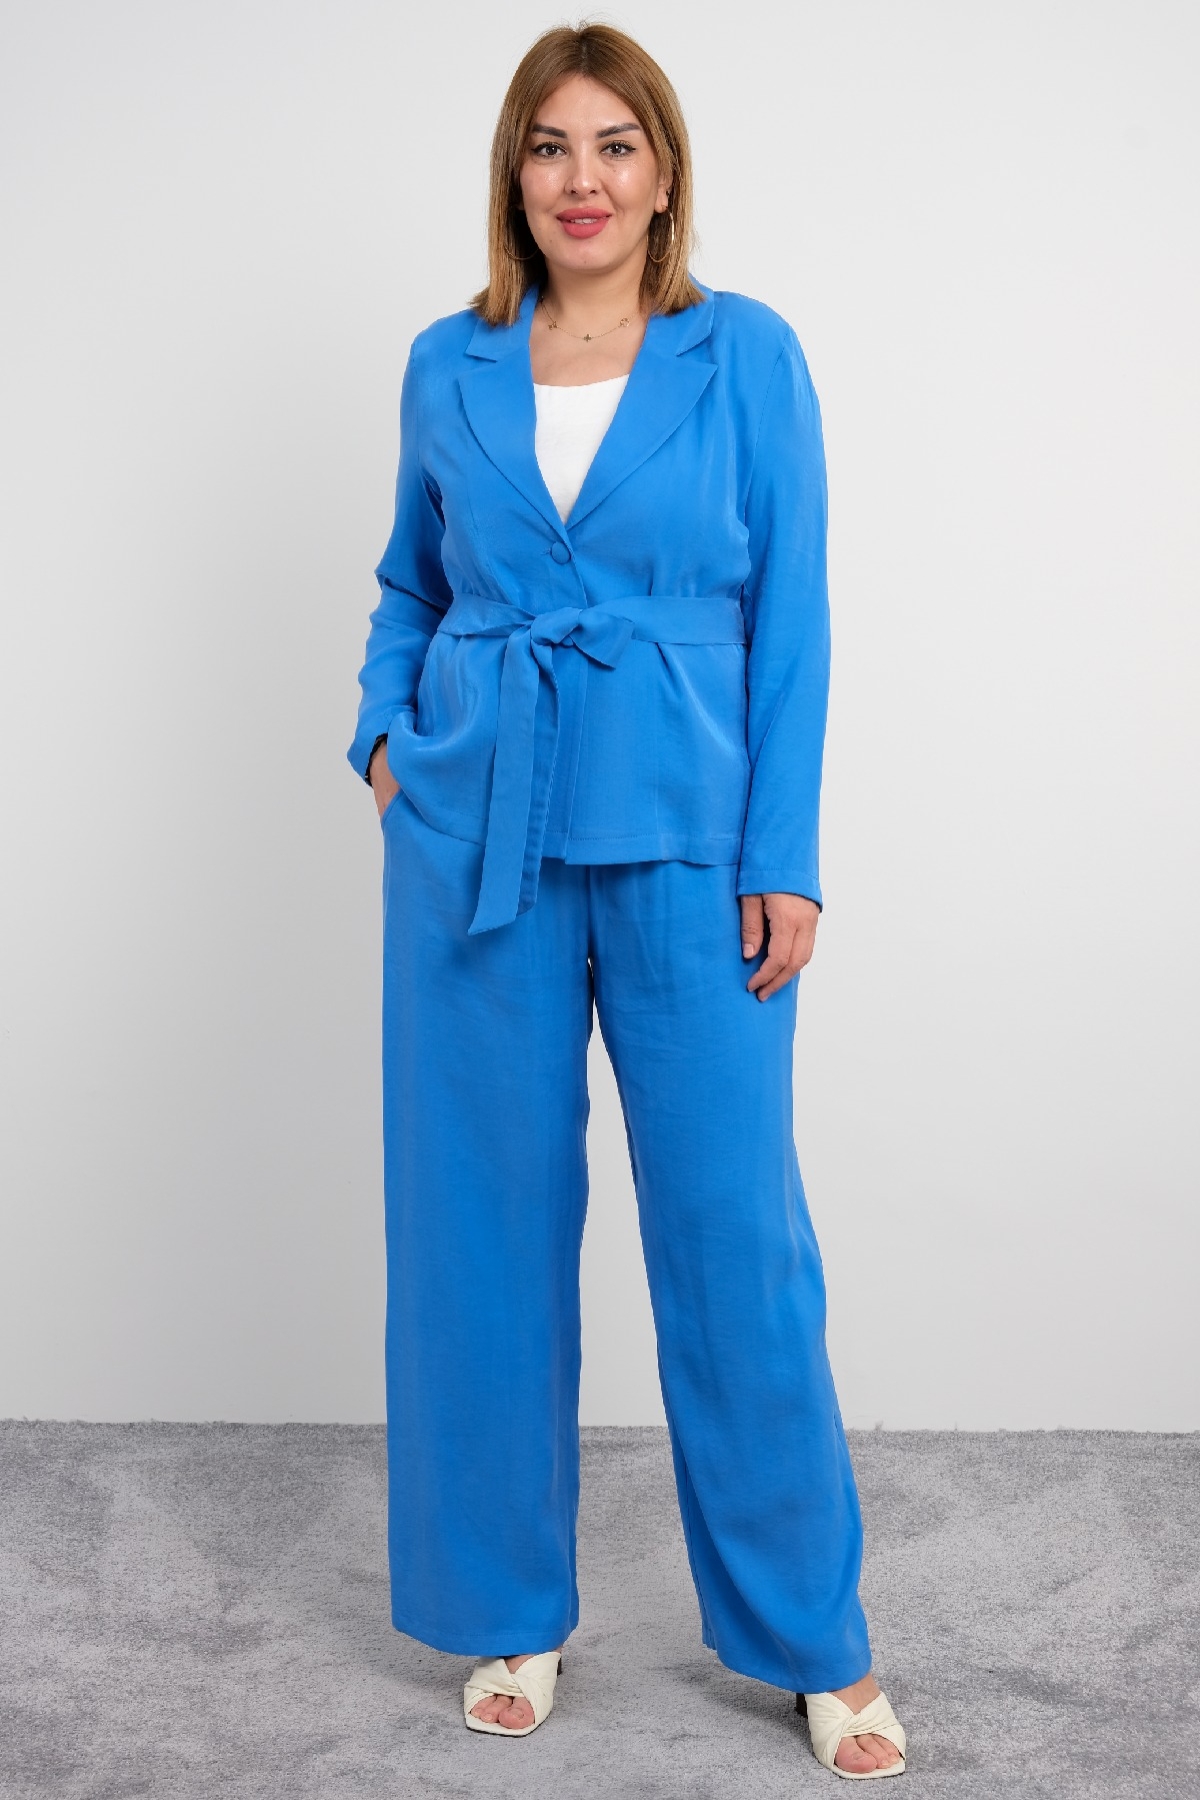 Women's 3 Piece Suits-Bright Blue